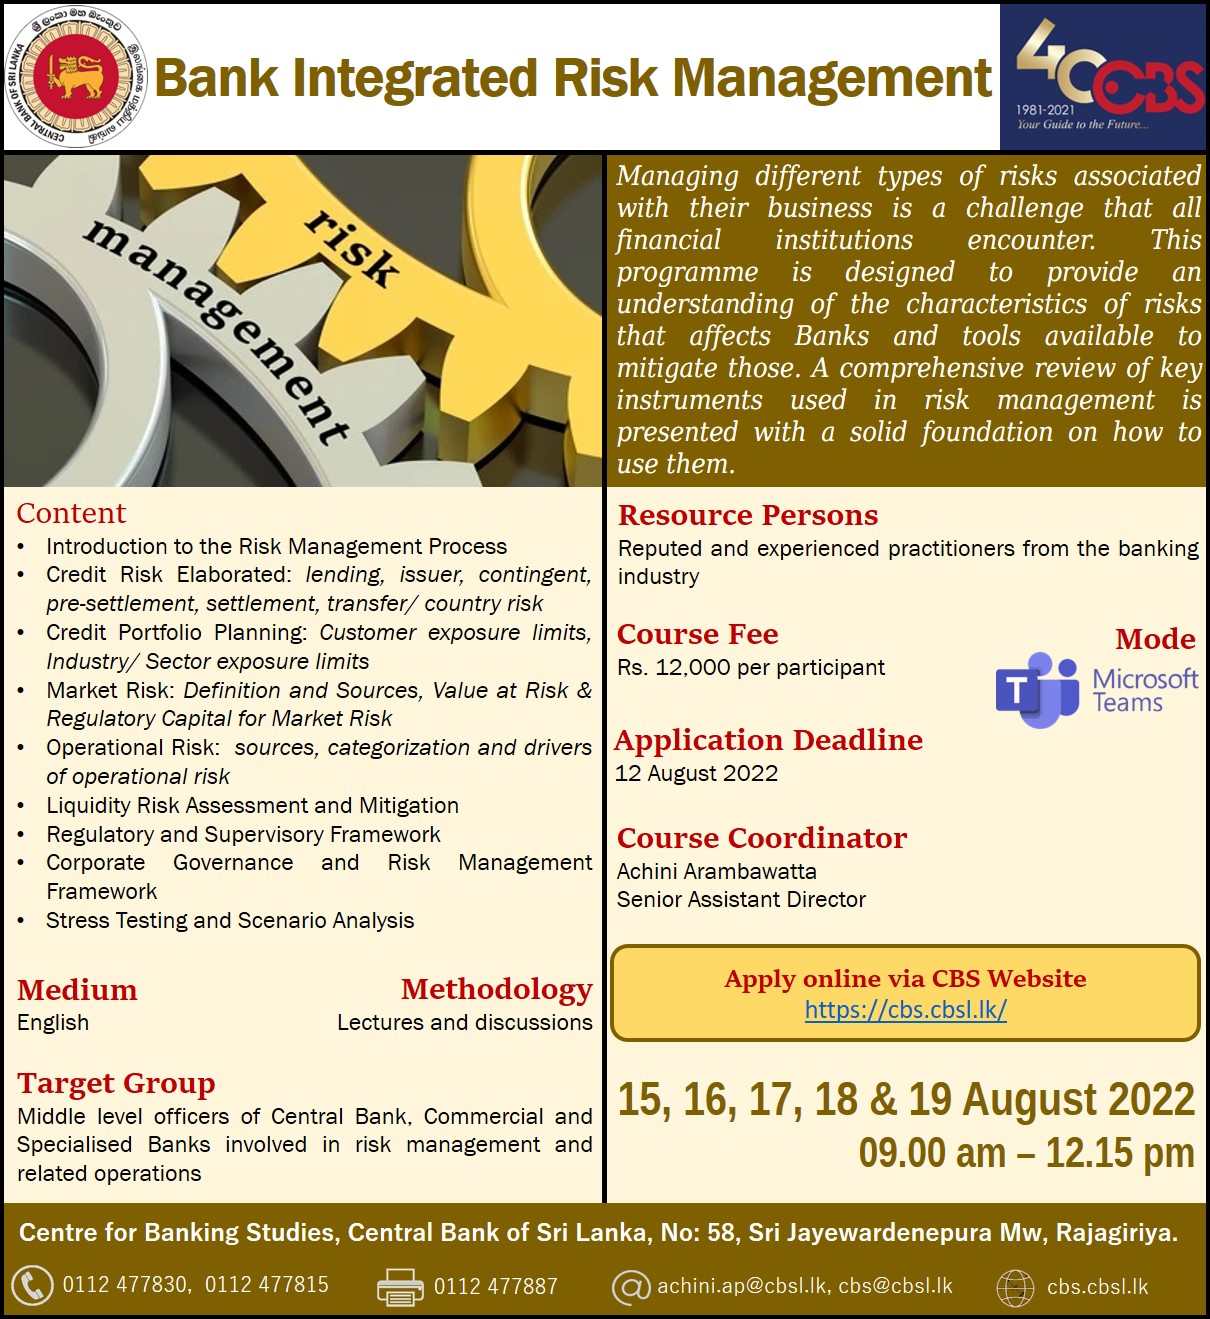 Bank Integrated Risk Management 2